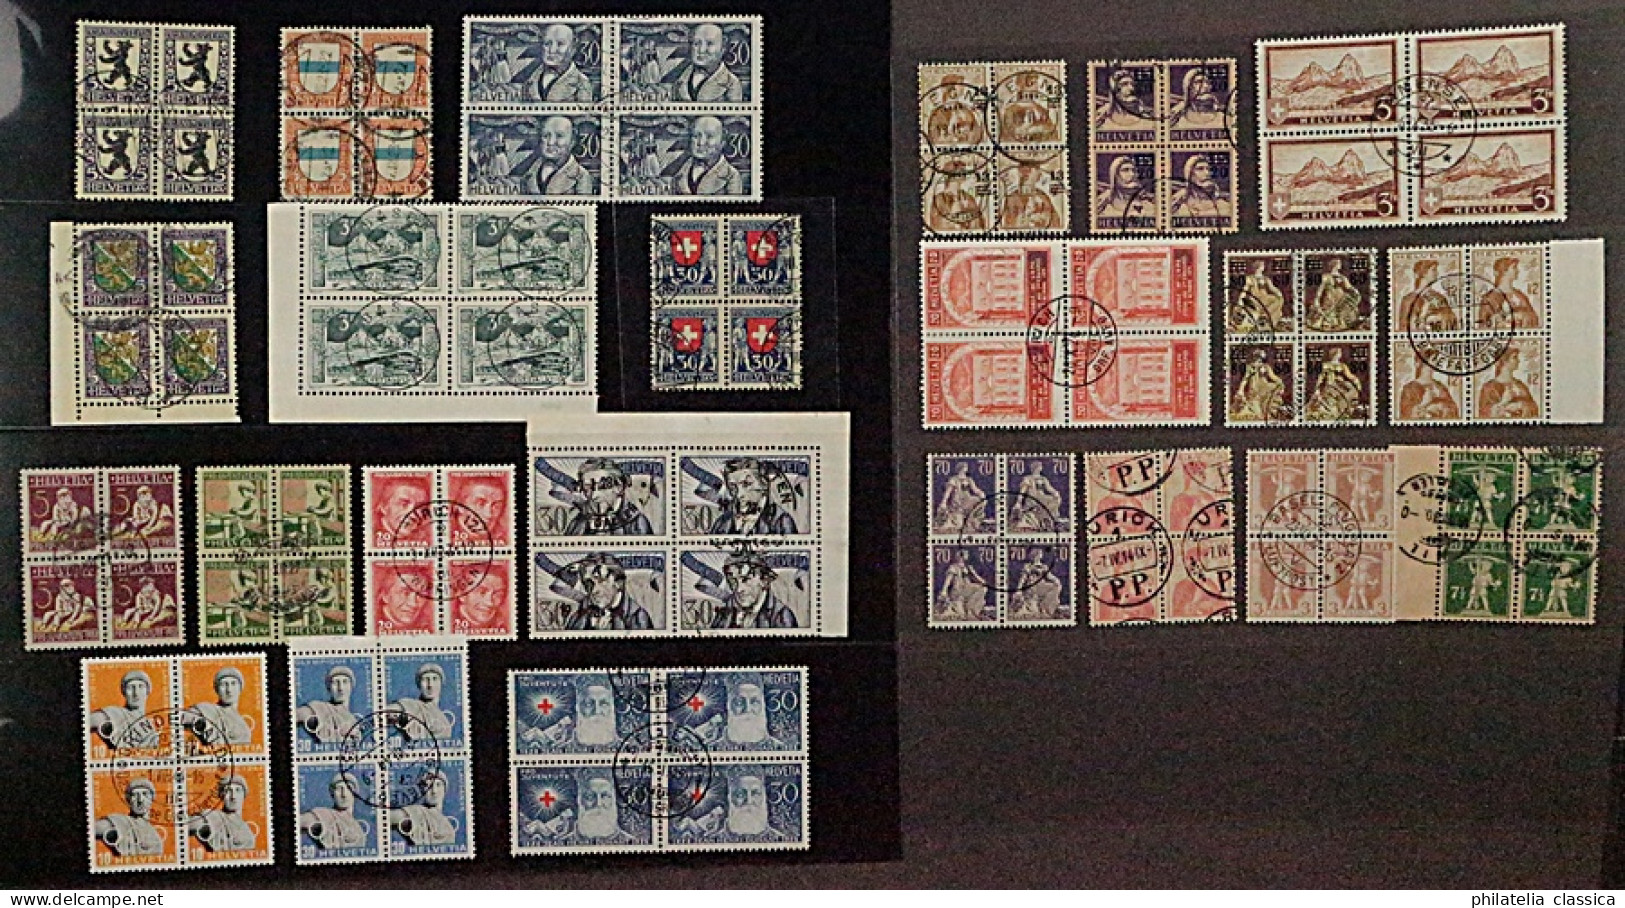 1907/44, SCHWEIZ 102-261, 23 Hochwertige Viererblocks Mit Zentrumstpl, 1063,-SFr - Usados